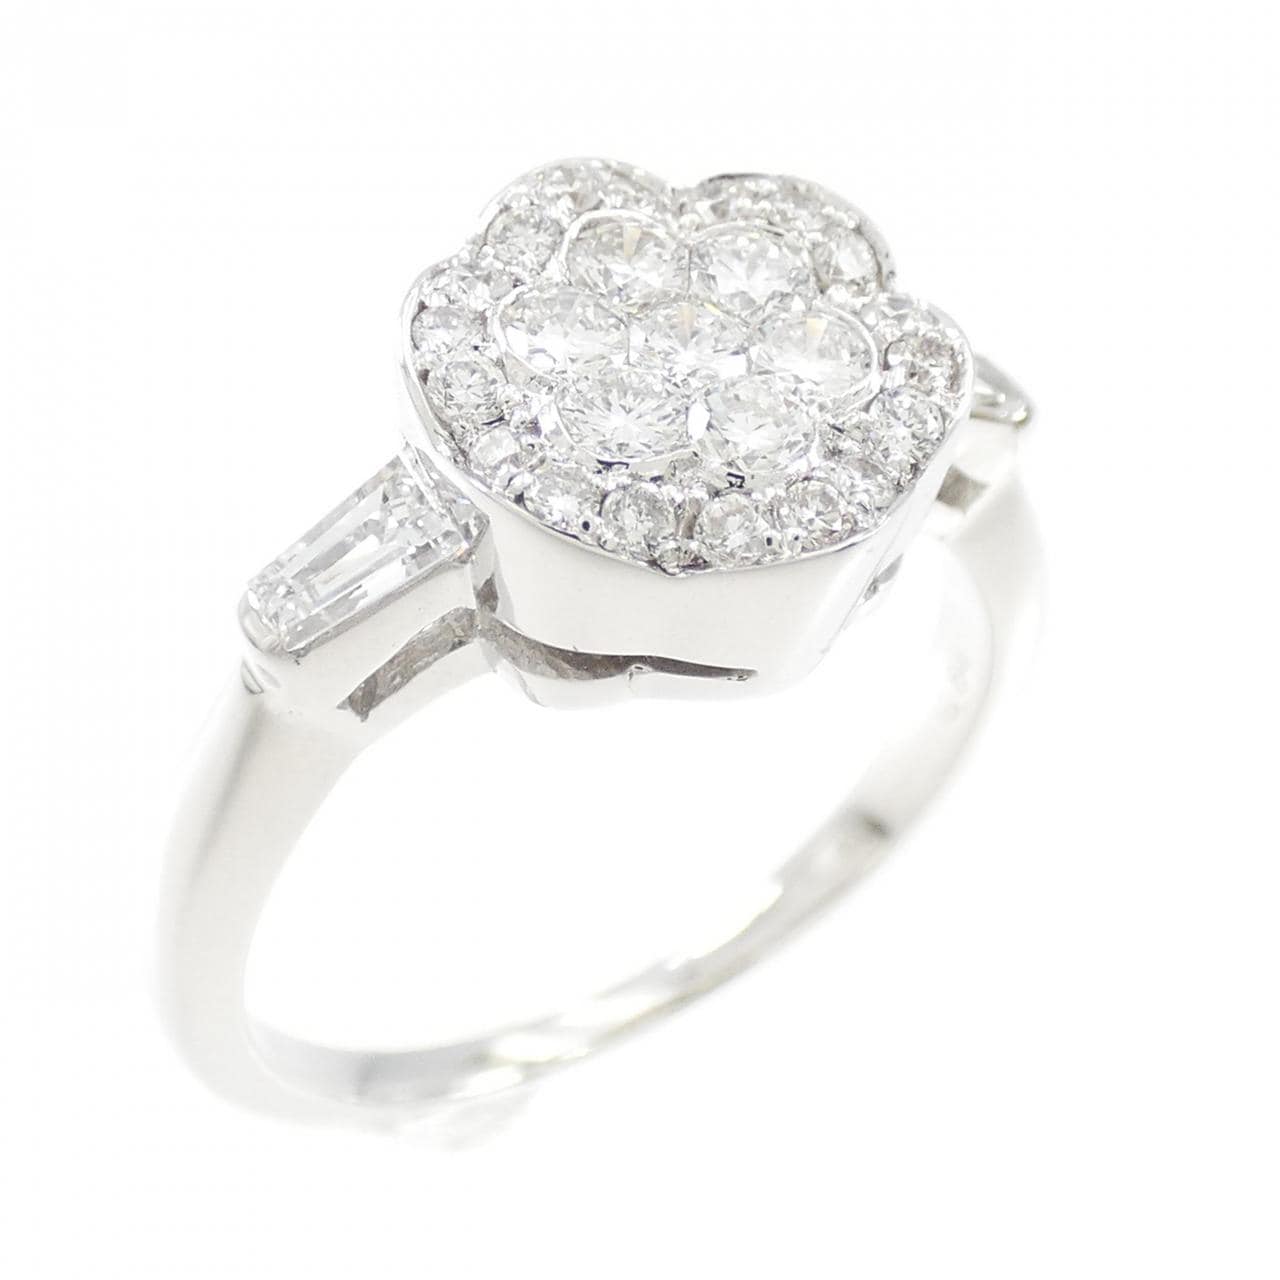 K18WG Flower Diamond Ring 0.64CT